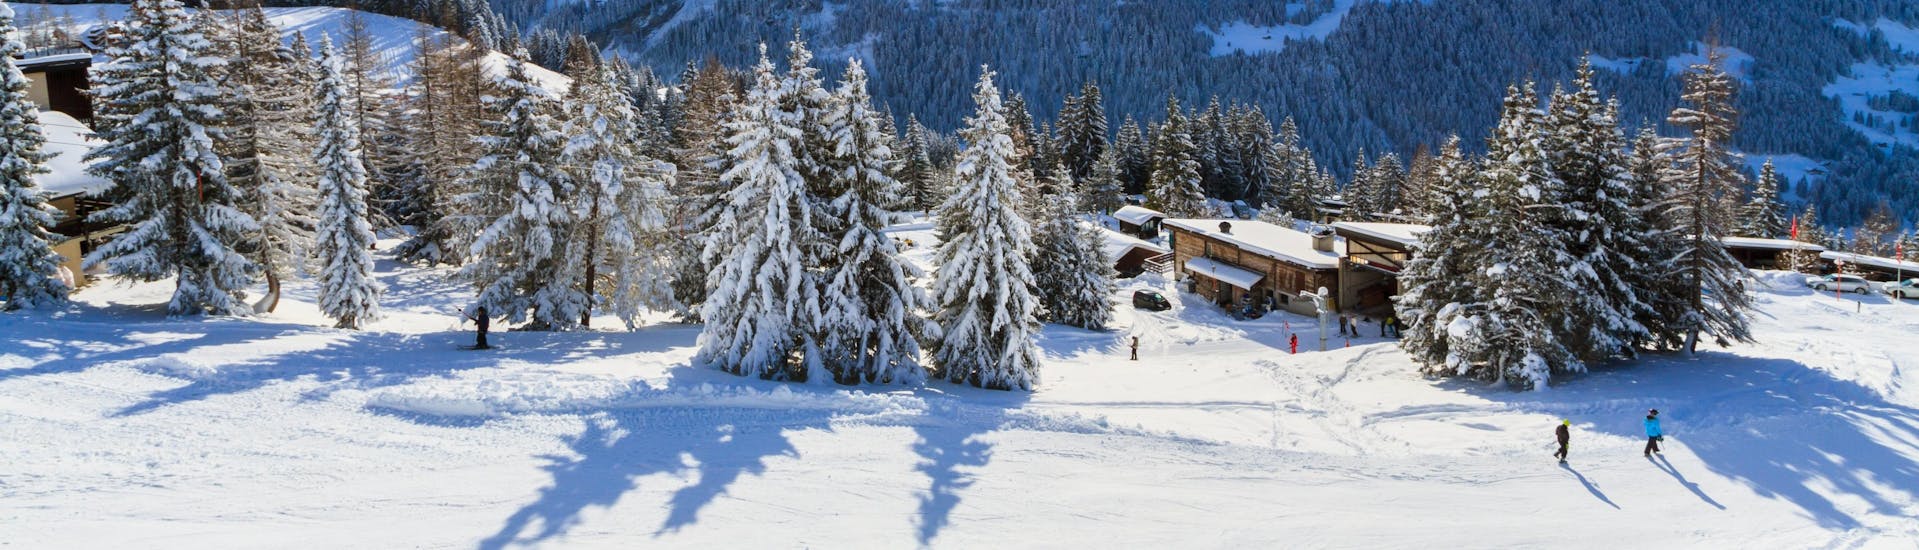 Une vue panoramique des pistes de ski et des montagnes environnantes de Villars, une station de ski suisse populaire où les visiteurs peuvent prendre des cours de ski avec une des écoles de ski locales.